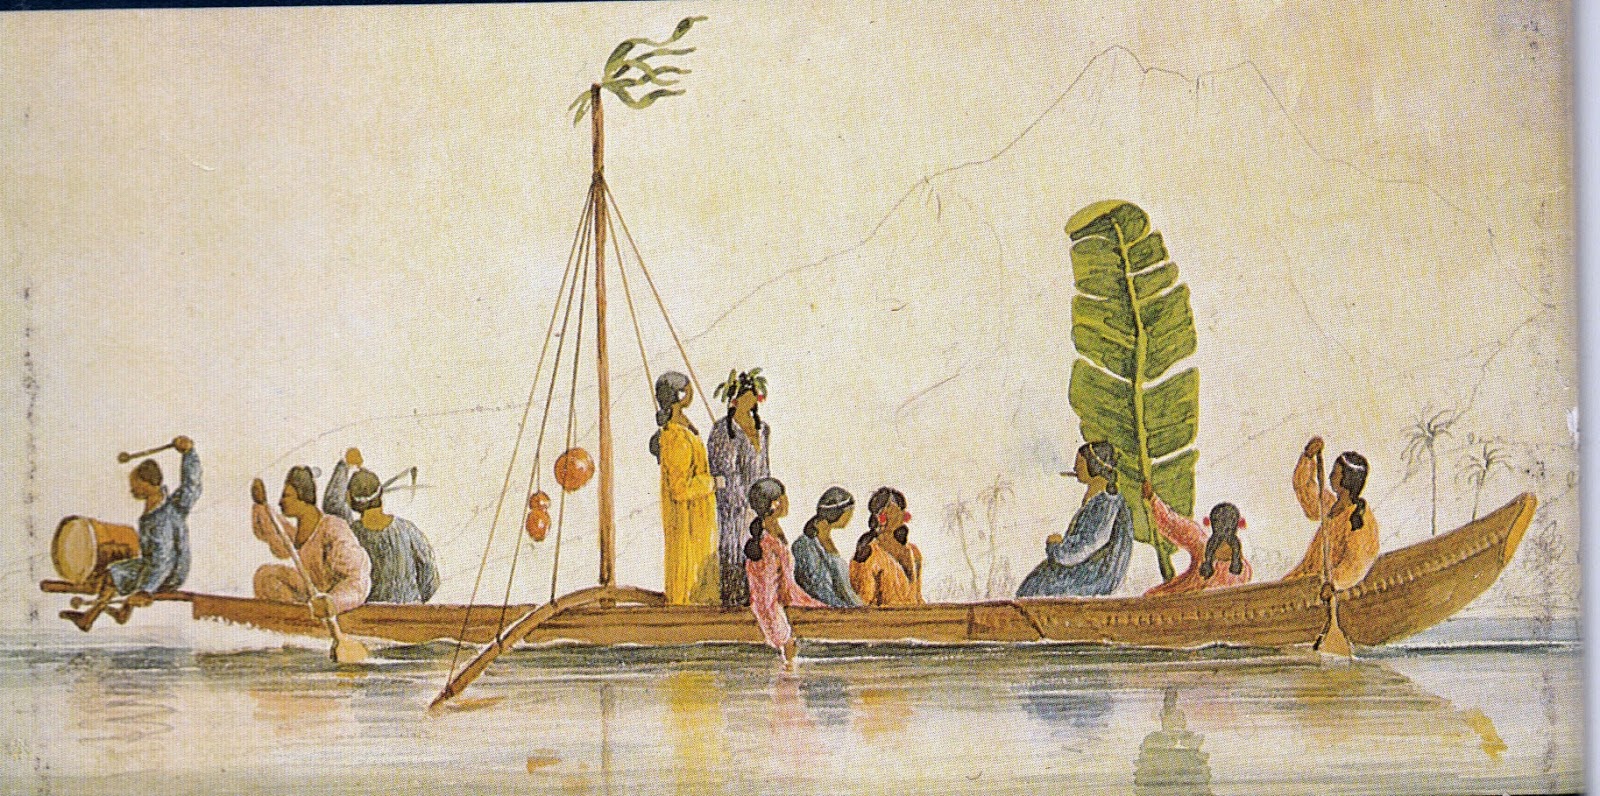 sewn canoe, Society Islands